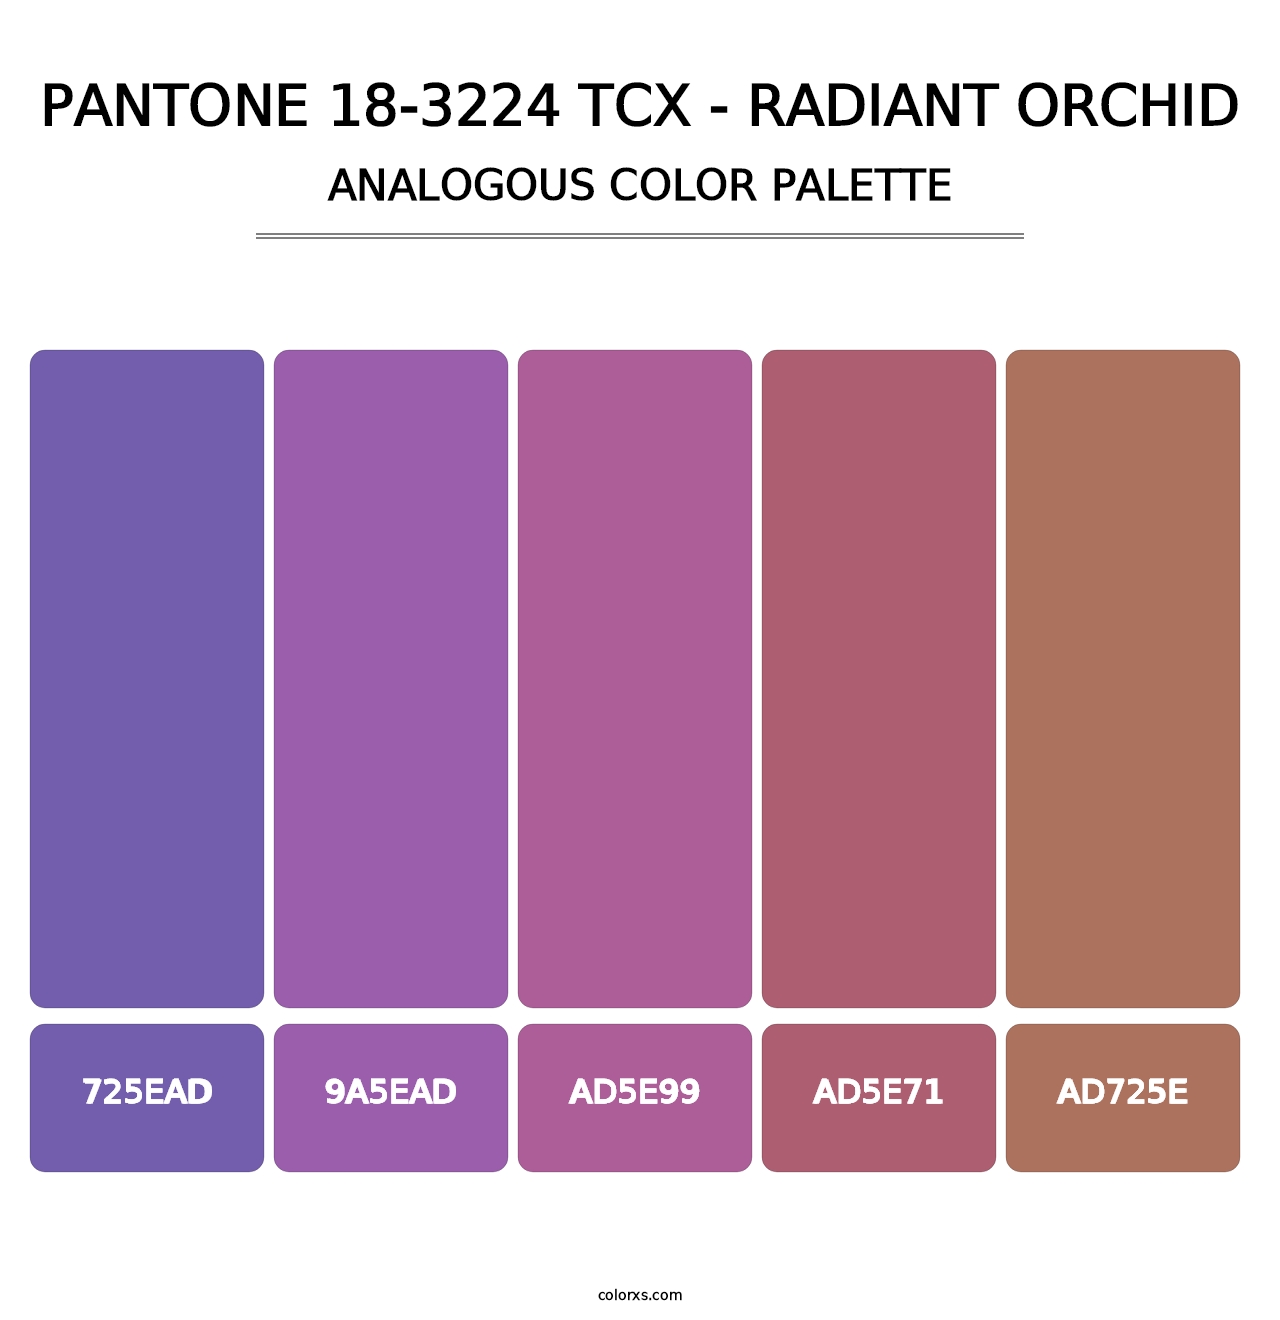 PANTONE 18-3224 TCX - Radiant Orchid - Analogous Color Palette